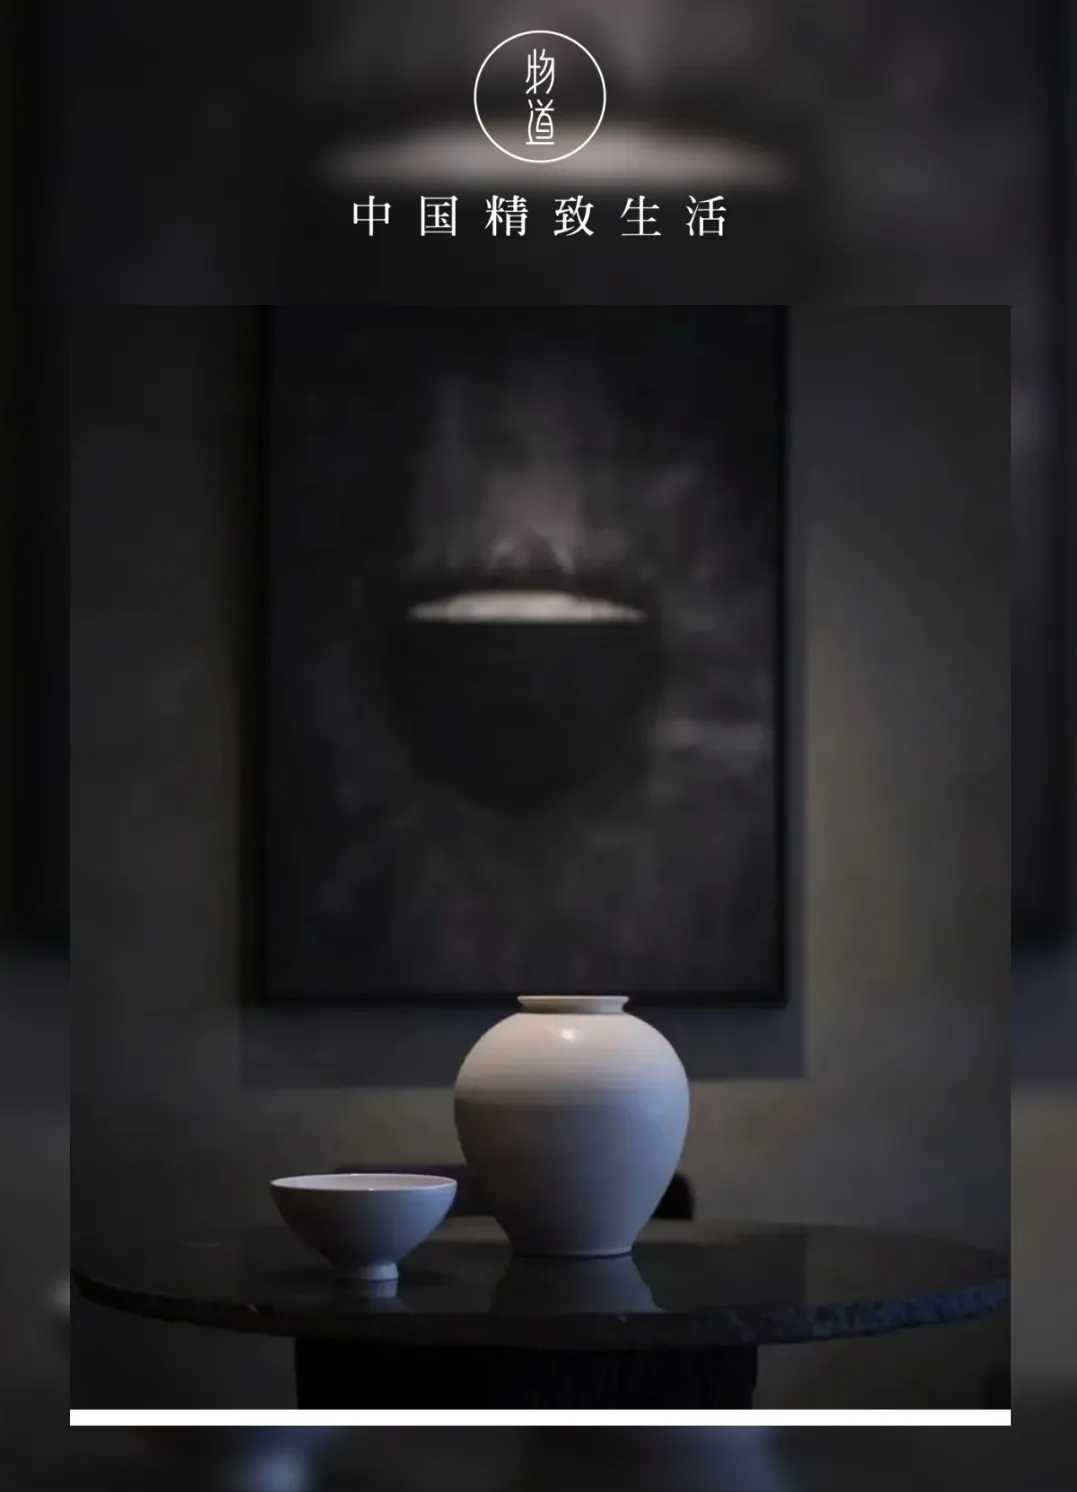 关于中国陶瓷传播的美文
